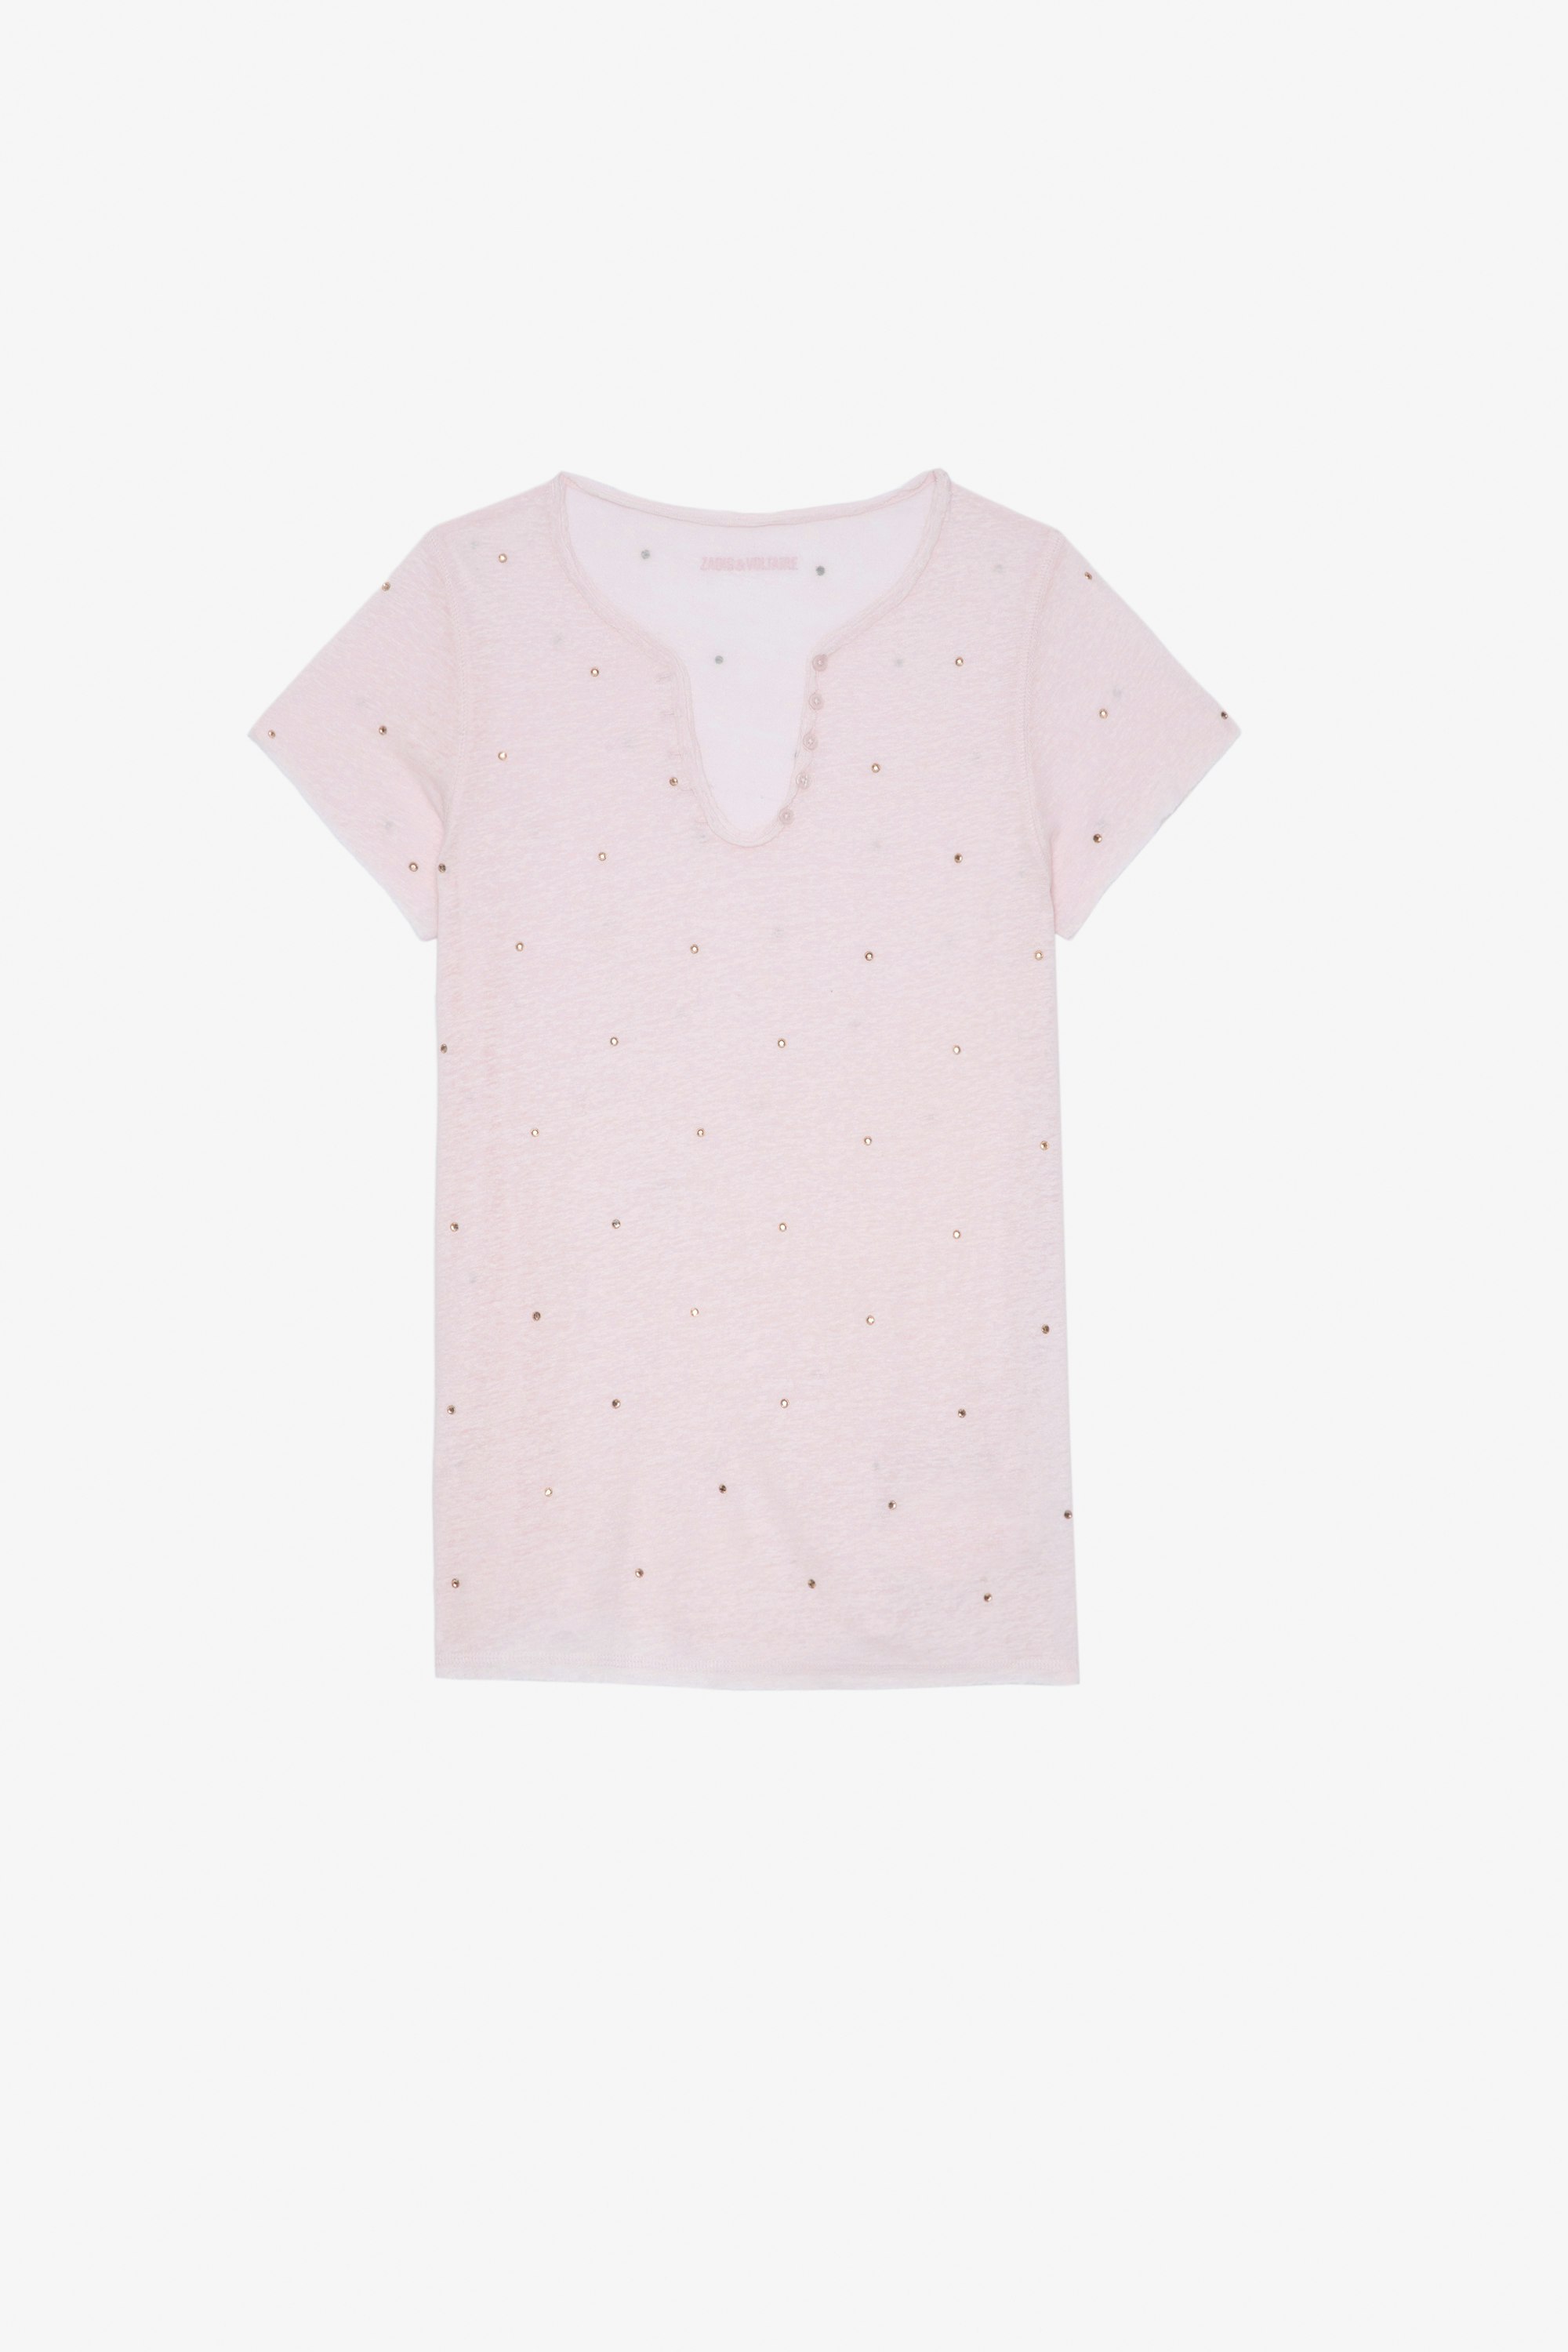 Henley T-Shirt Women's pink rhinestone-studded Henley T-shirt